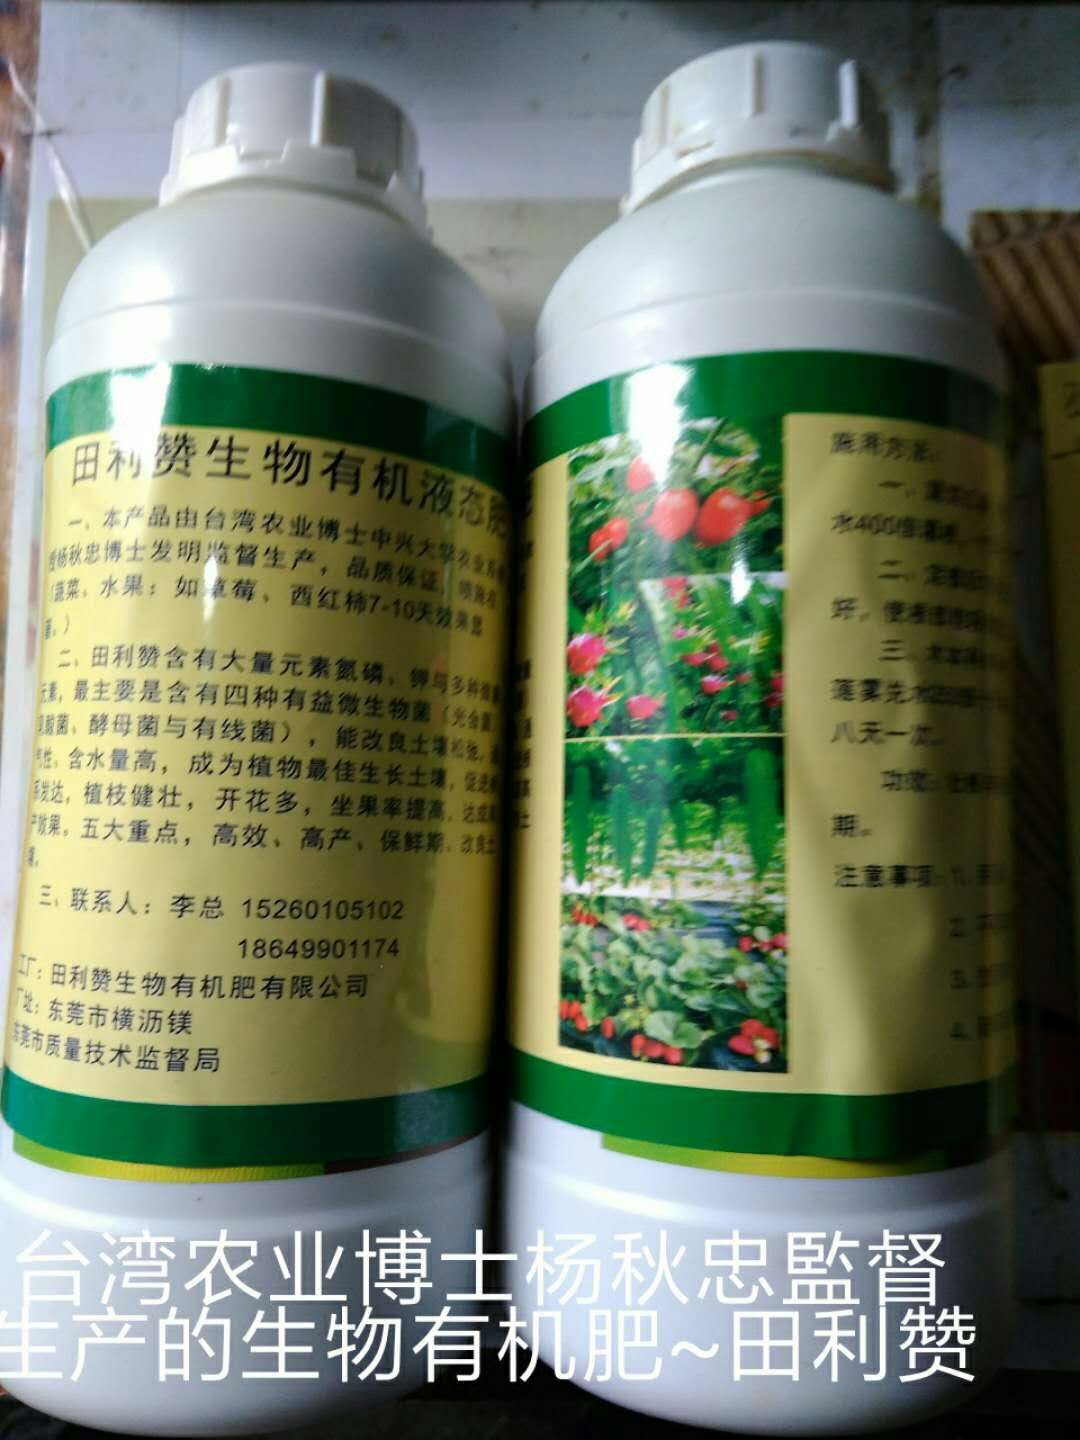 东莞市田利赞生物有机肥有限公司